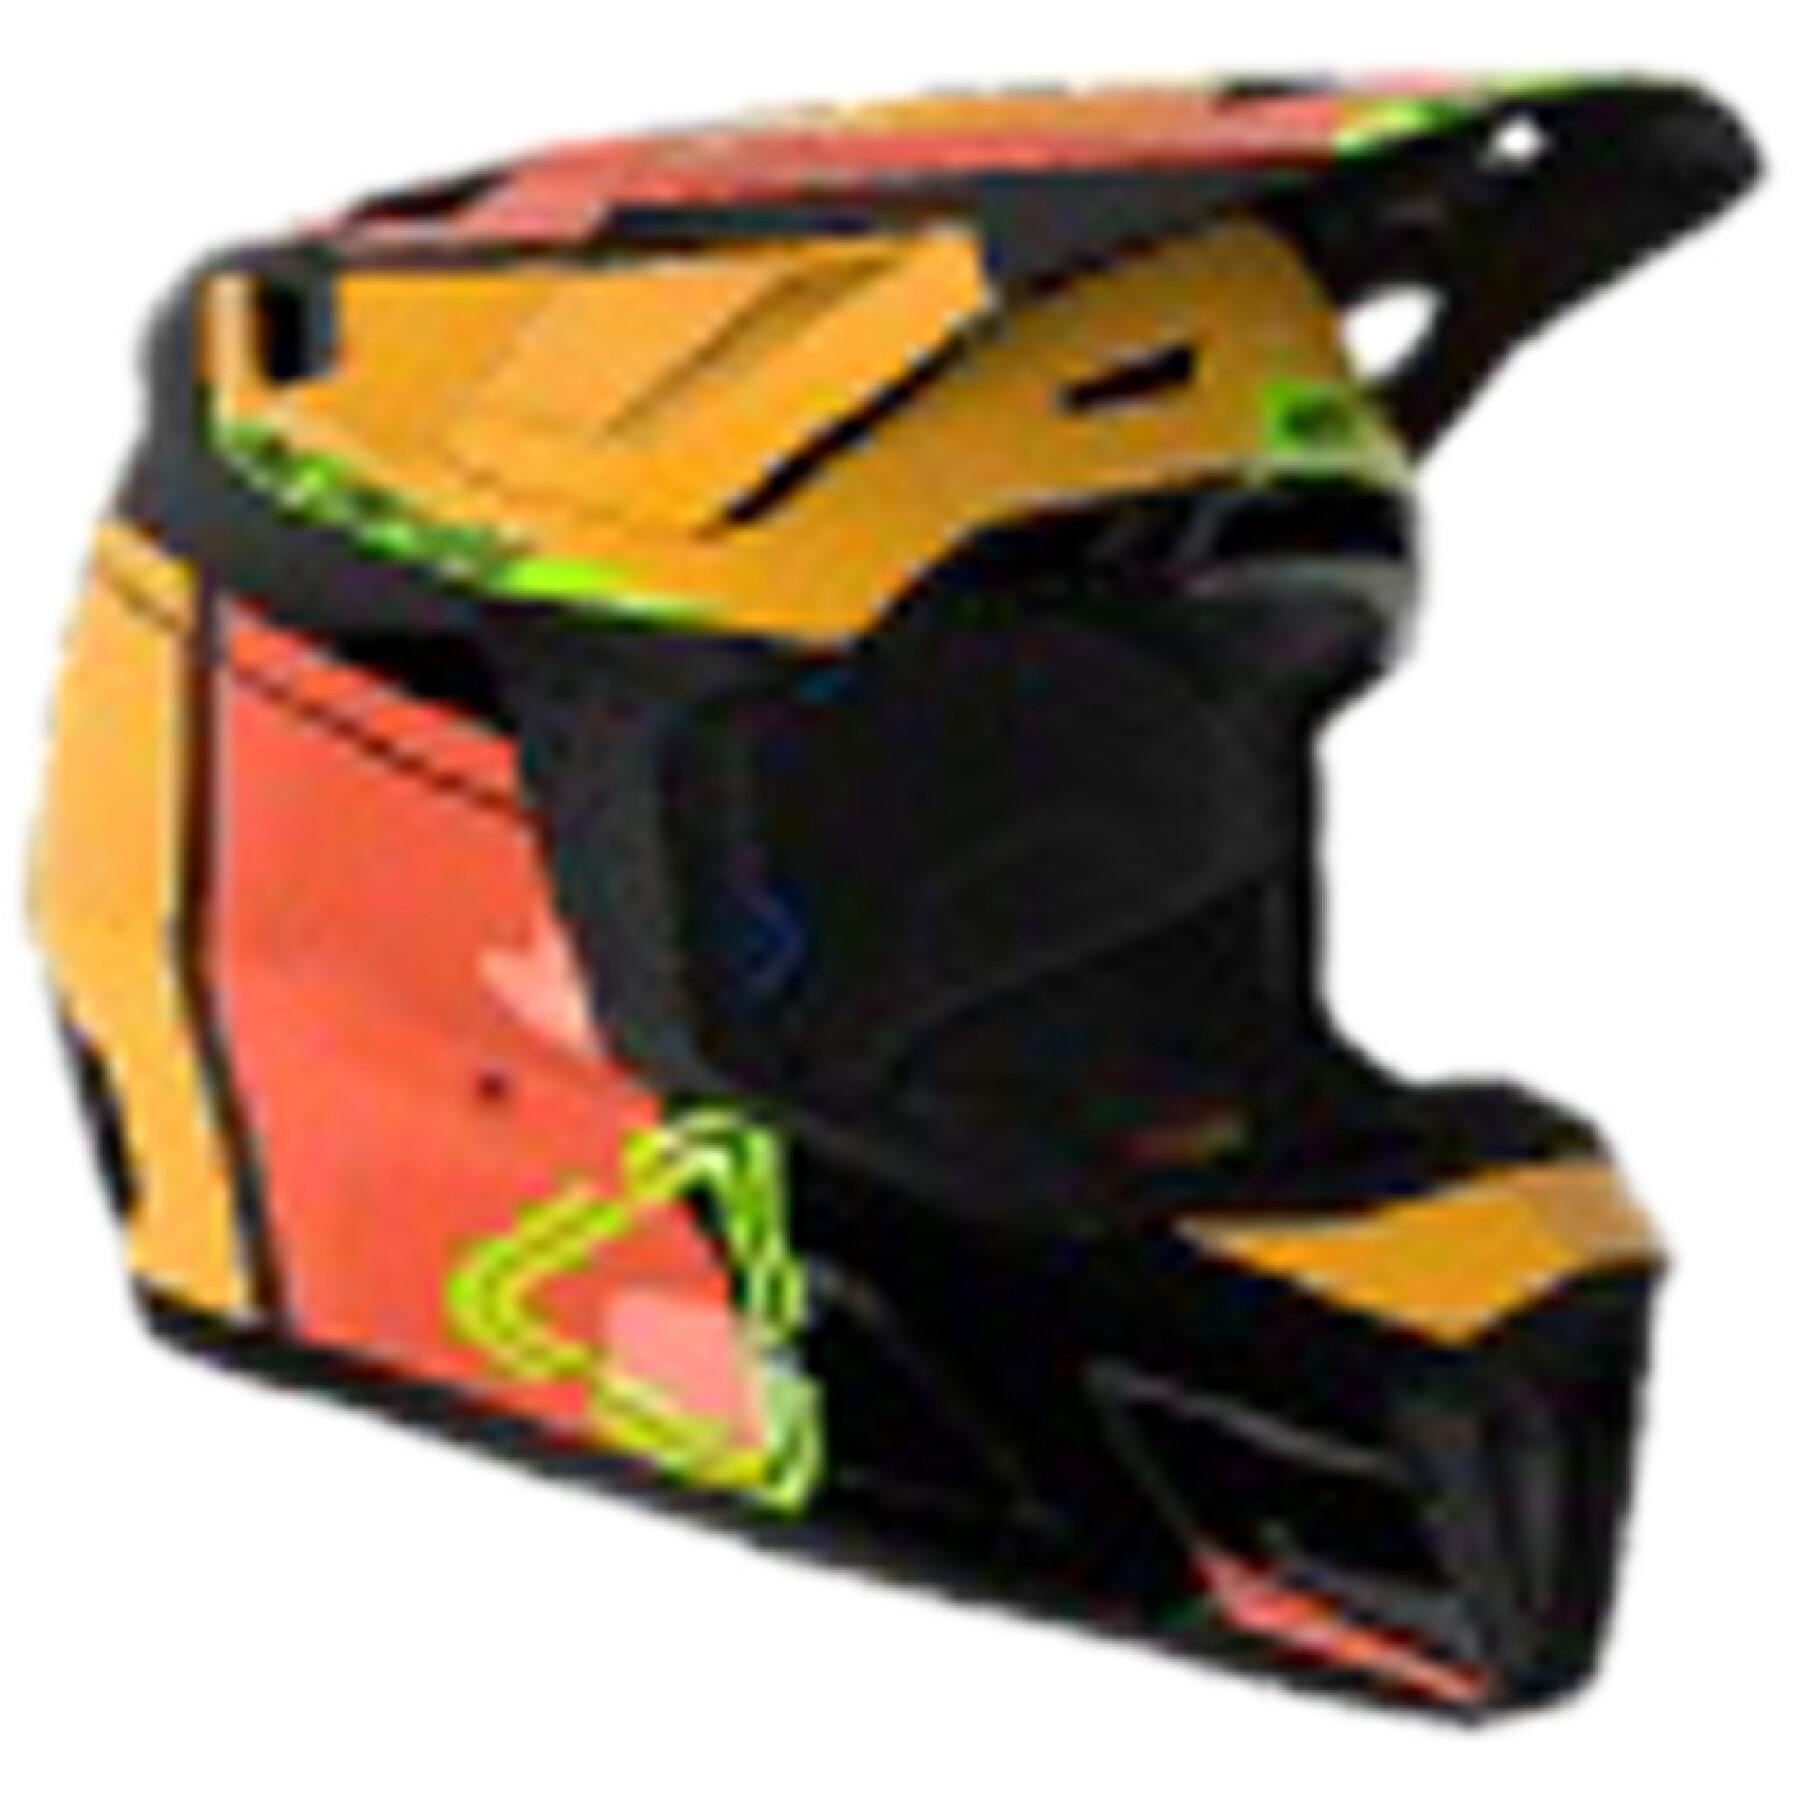 Kit de capacete de motocross Leatt 7.5 V24